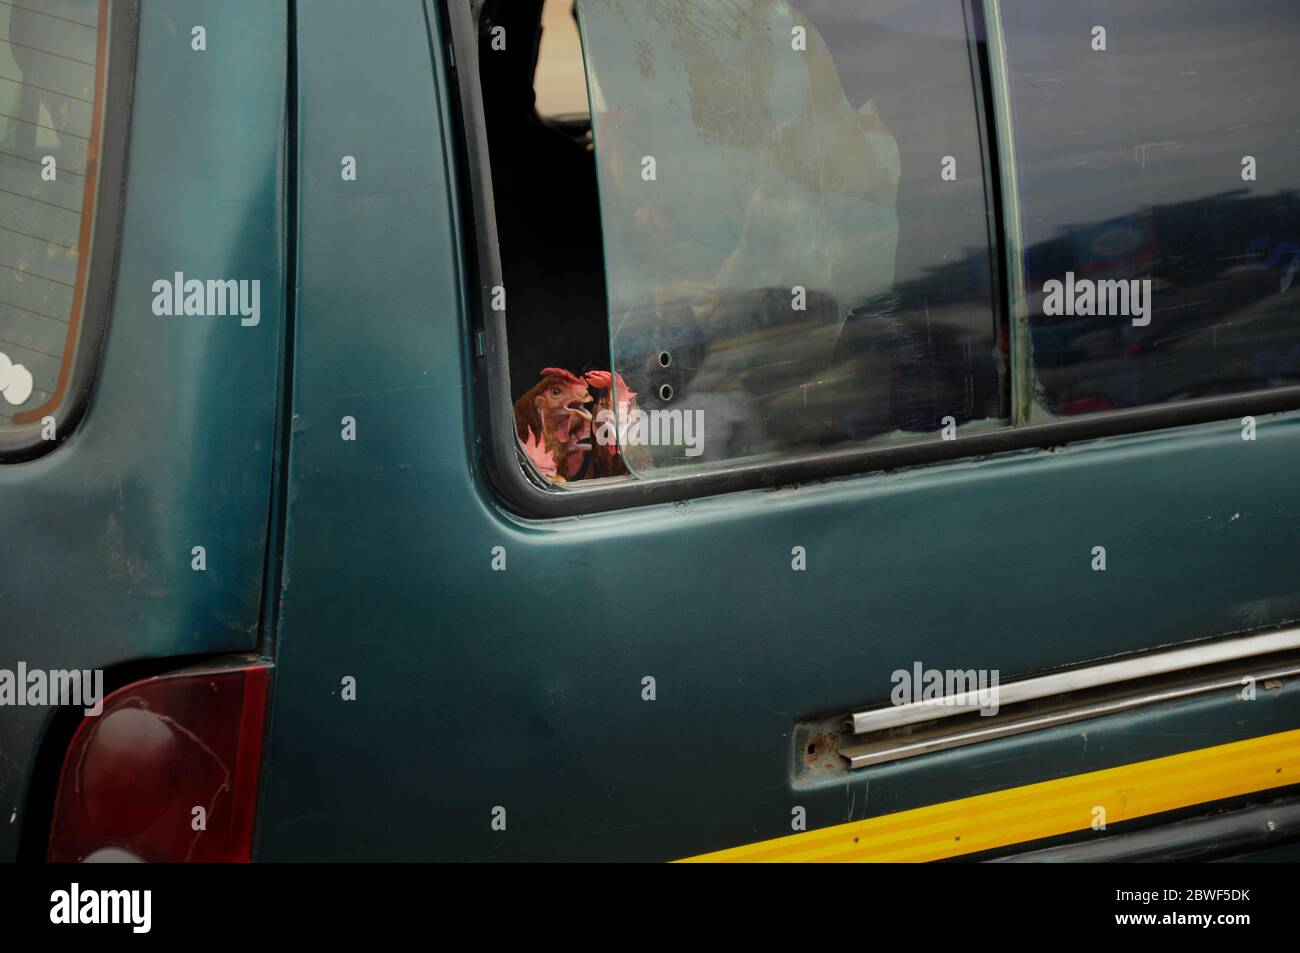 L'agricoltore ghanese trasporta i polli nella sua auto (il pollo si affaccia dalla finestra laterale dell'auto) - scena tipica in un paese africano in via di sviluppo, Foto Stock